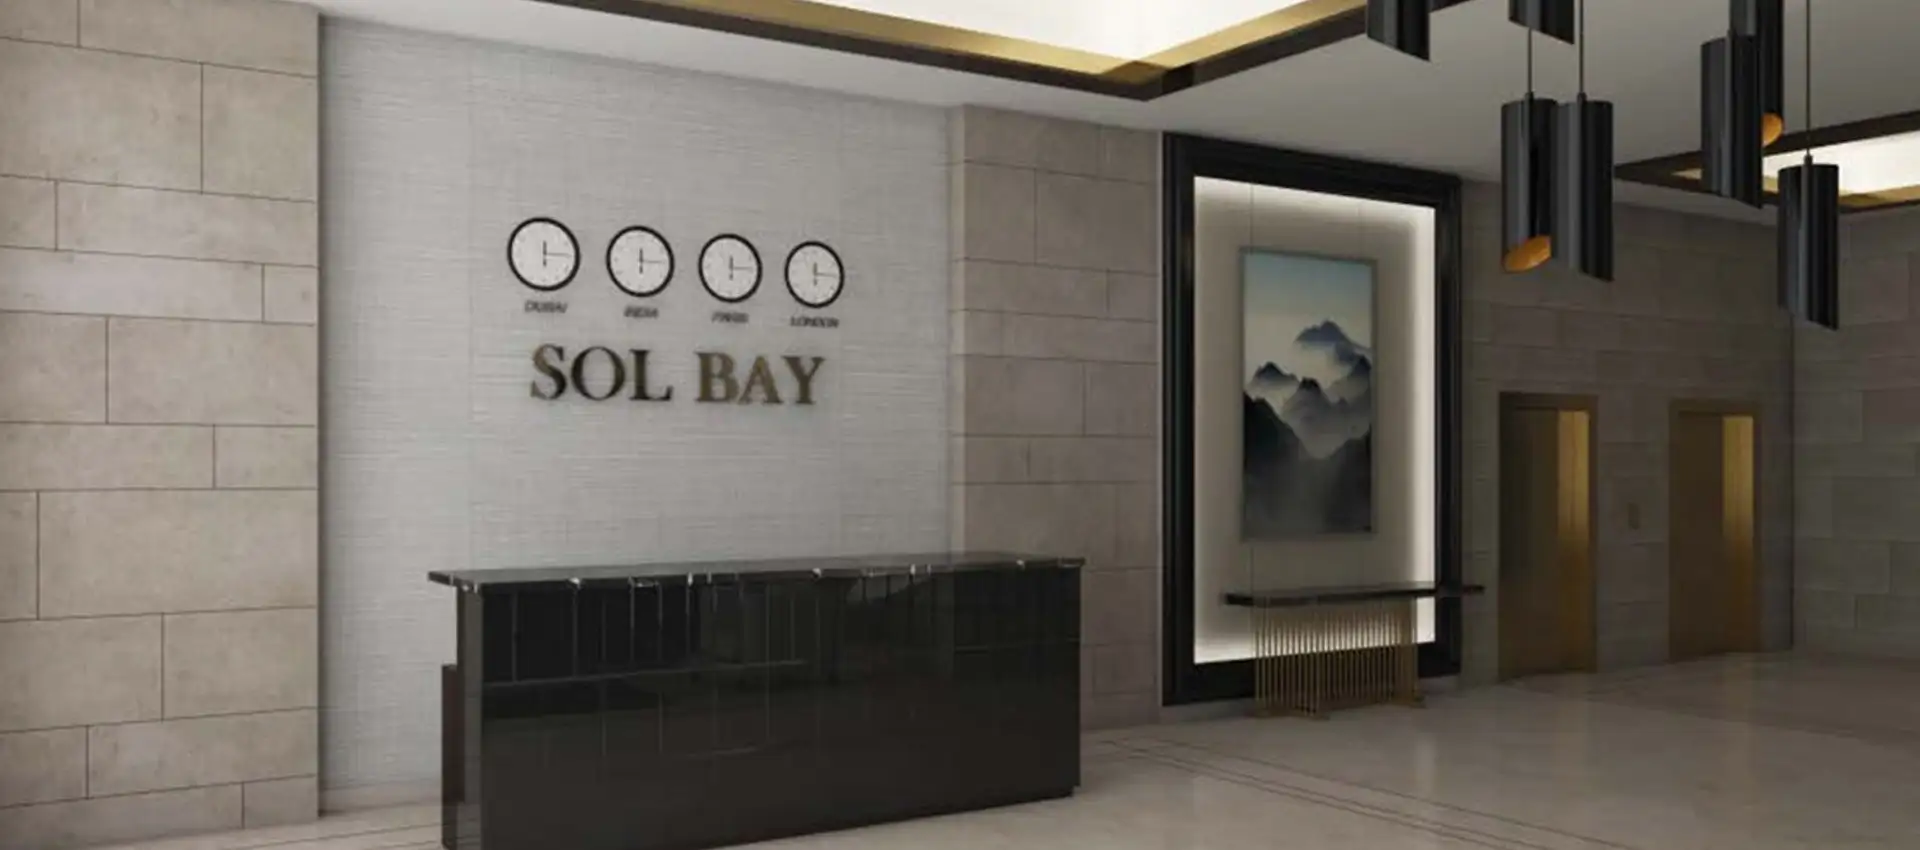 Sol Bay Mortgage